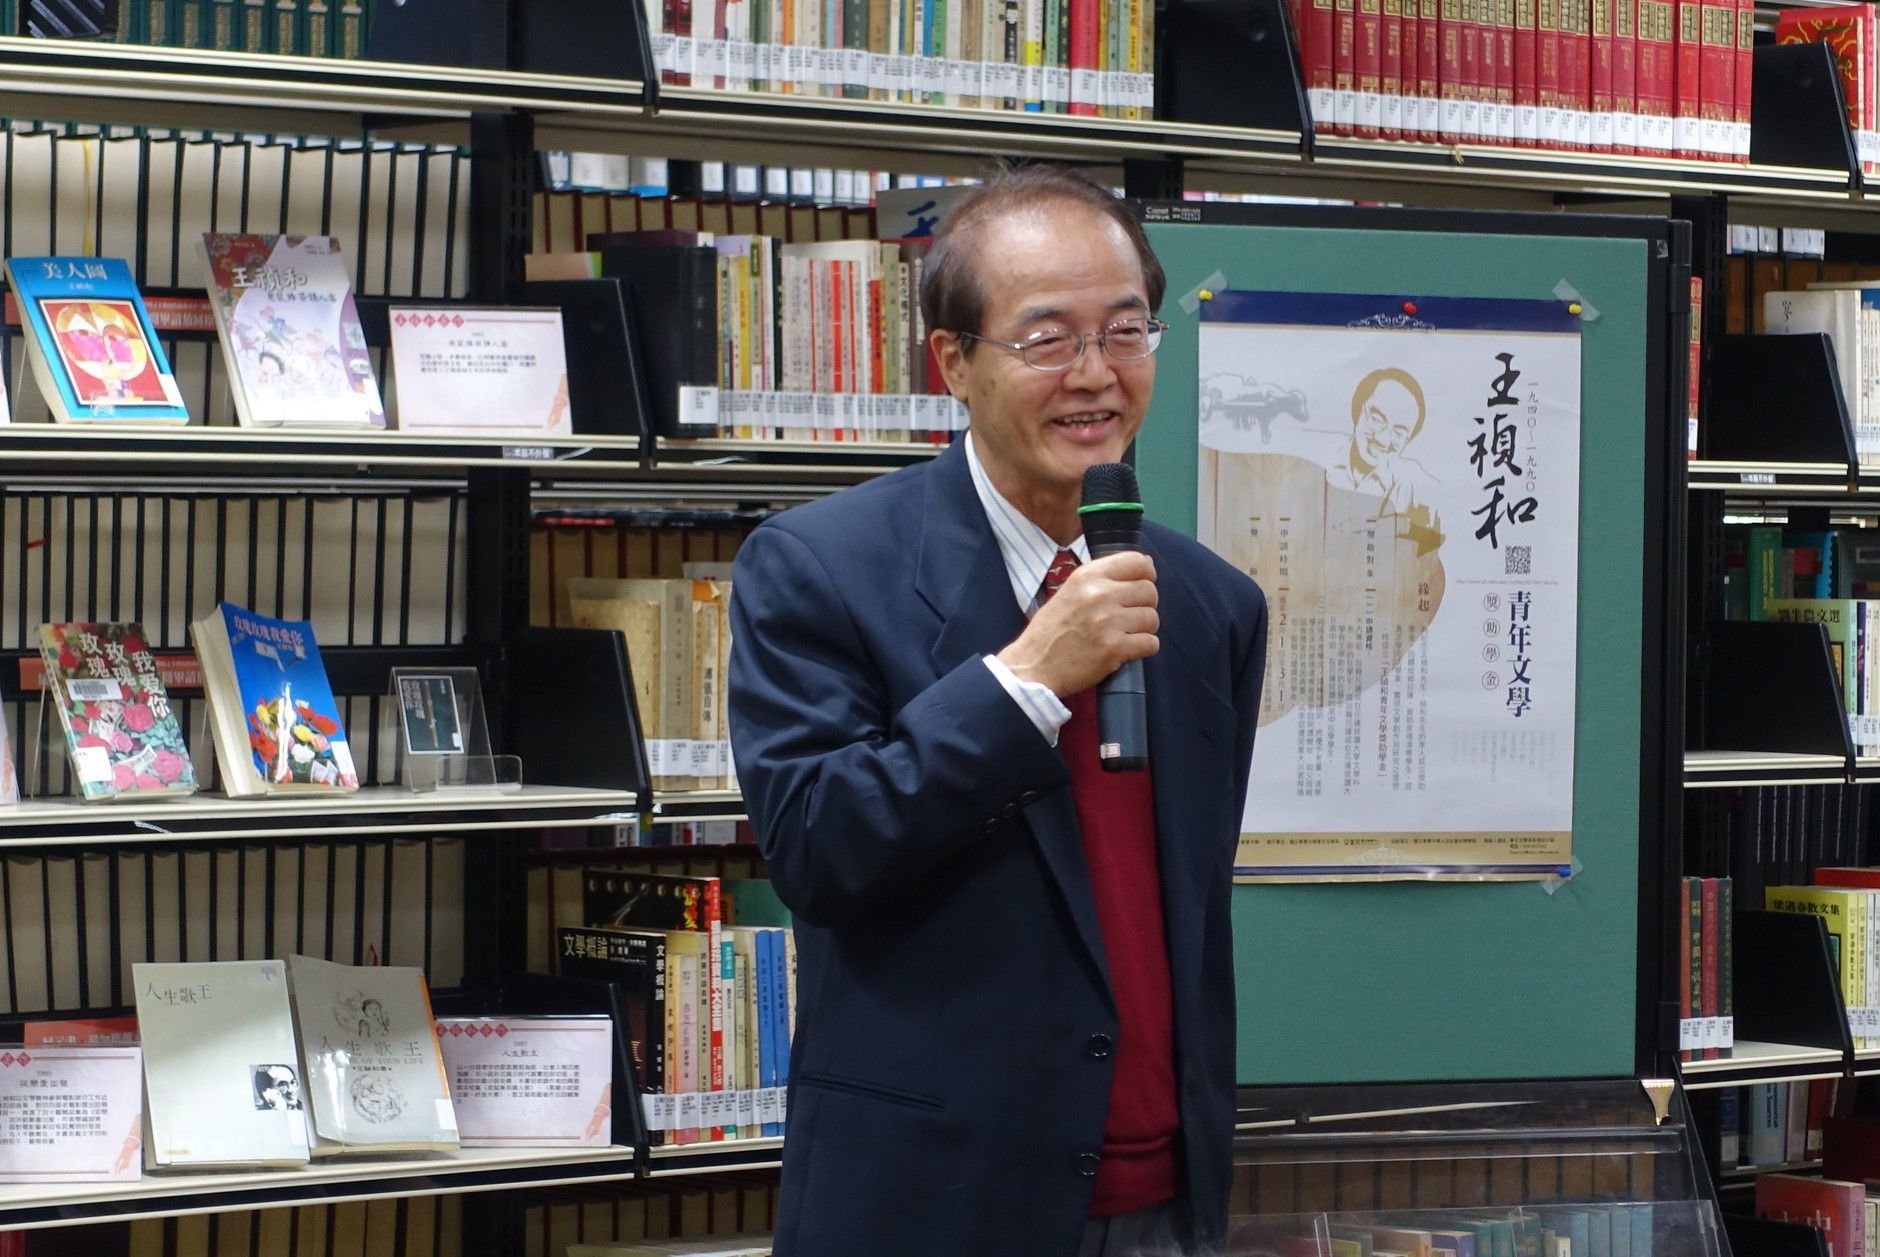 臺大名譽教授鄭恆雄表示，很開心以王禎和好友身分出席獎助學金記者會，讓五十年的友誼能透過文學延續。